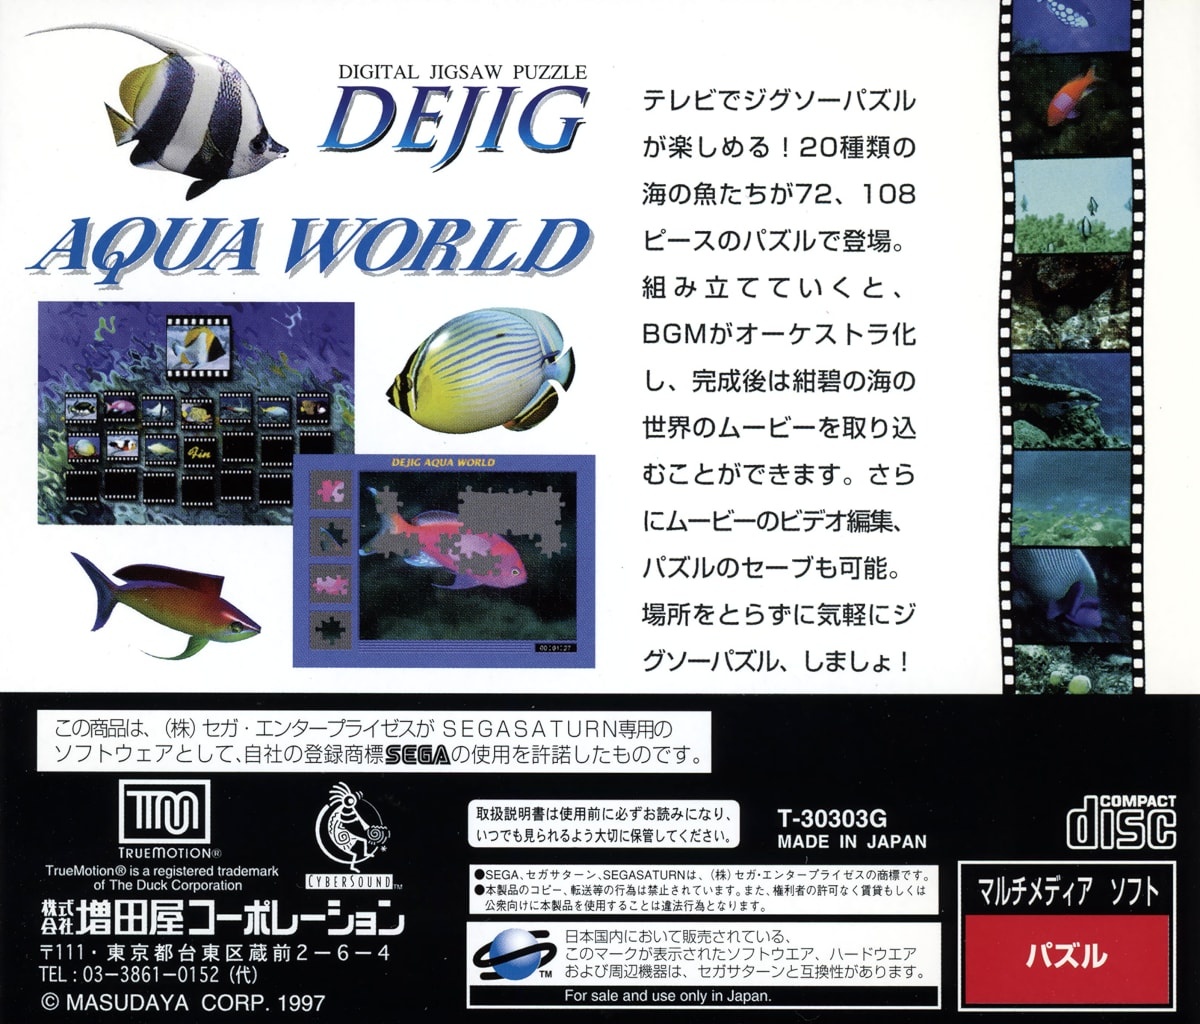 Dejig Aqua World cover